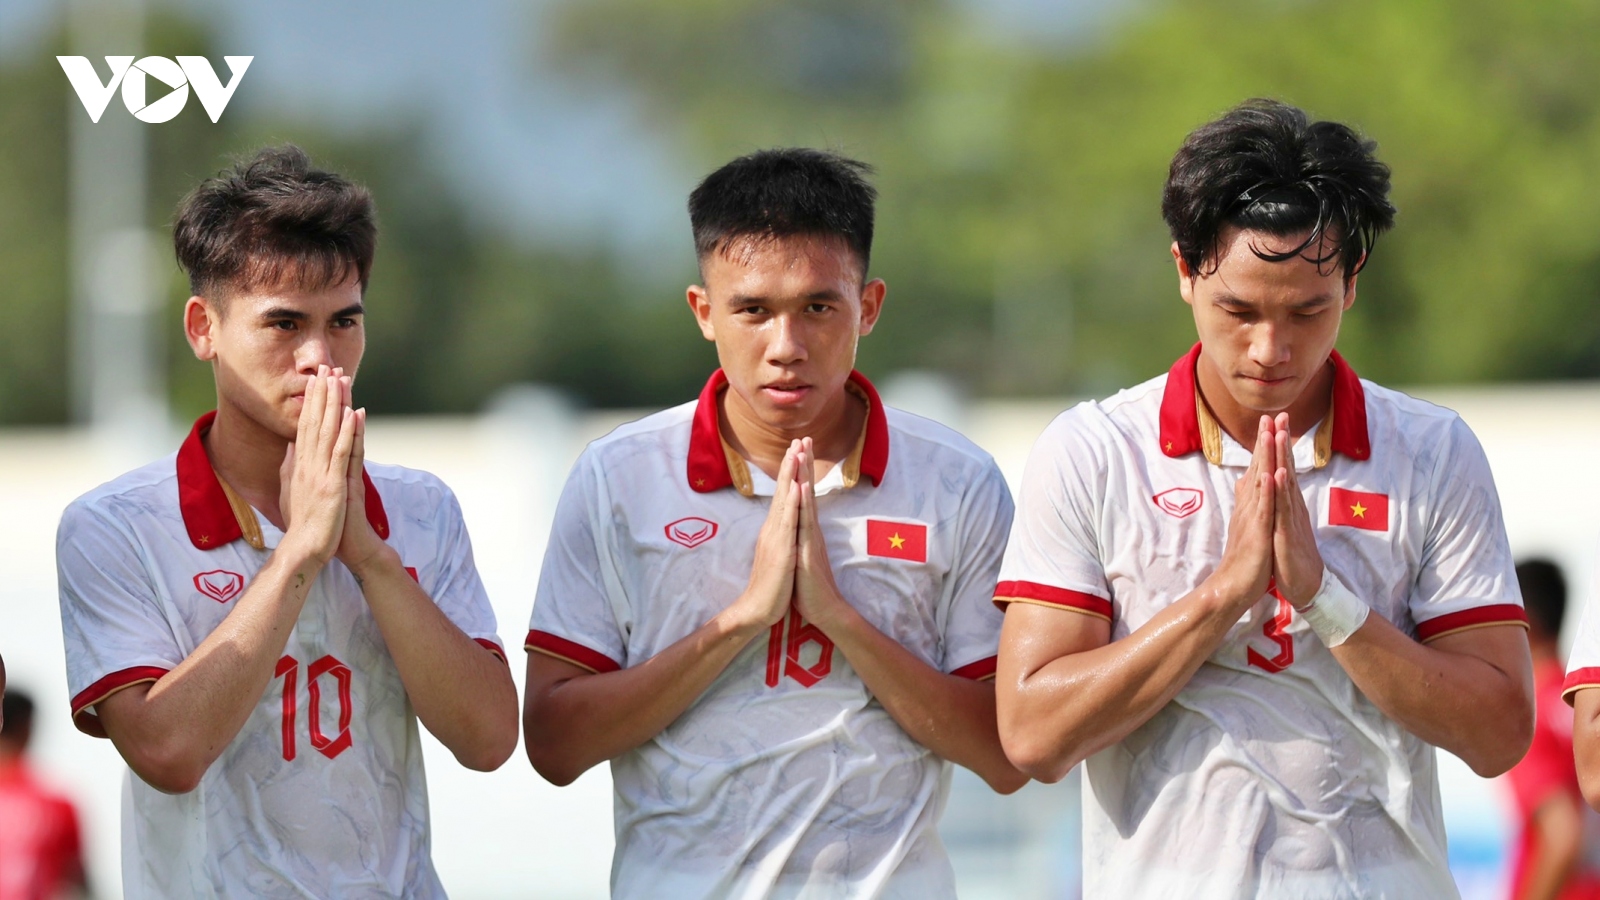 U23 Việt Nam - U23 Philippines: Thẳng tiến vào bán kết